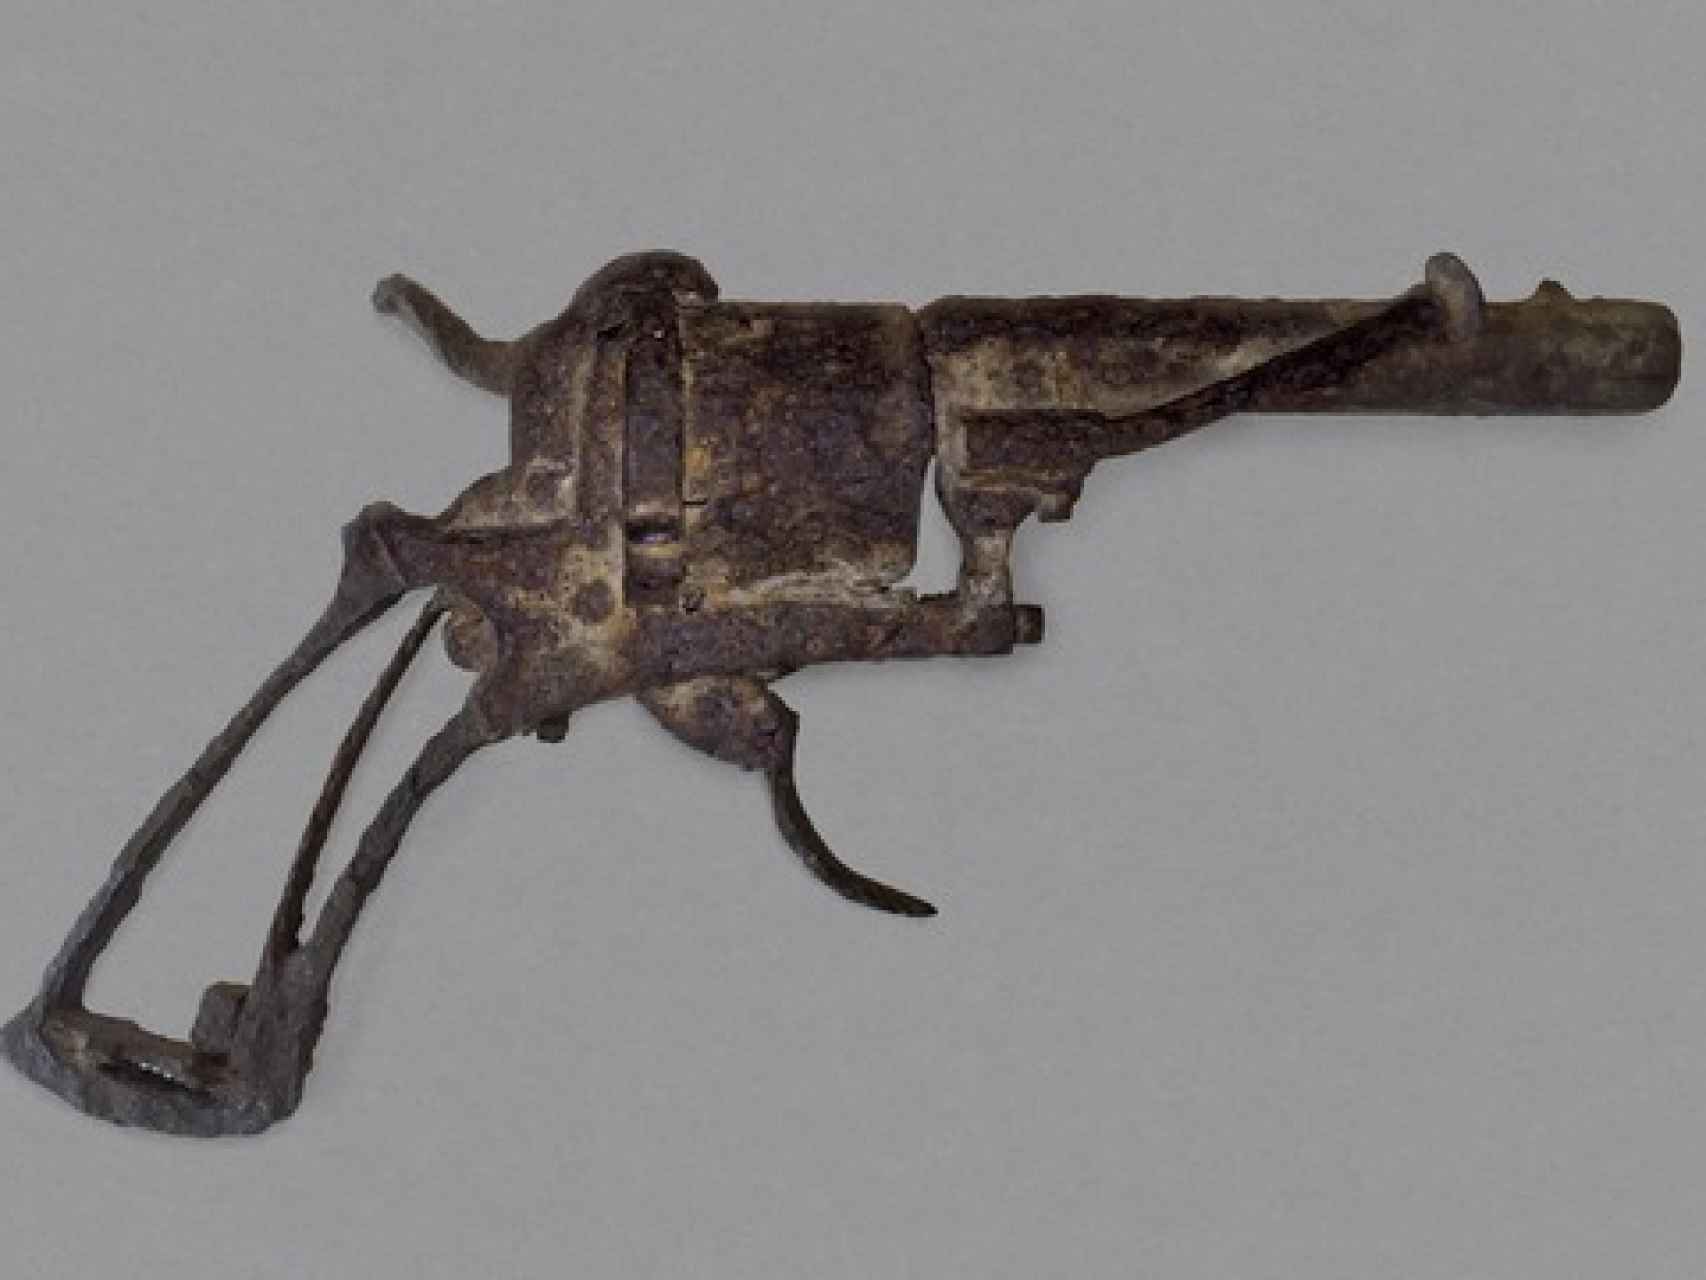 La pistola expuesta, posible arma con la que se quitó la vida el pintor.